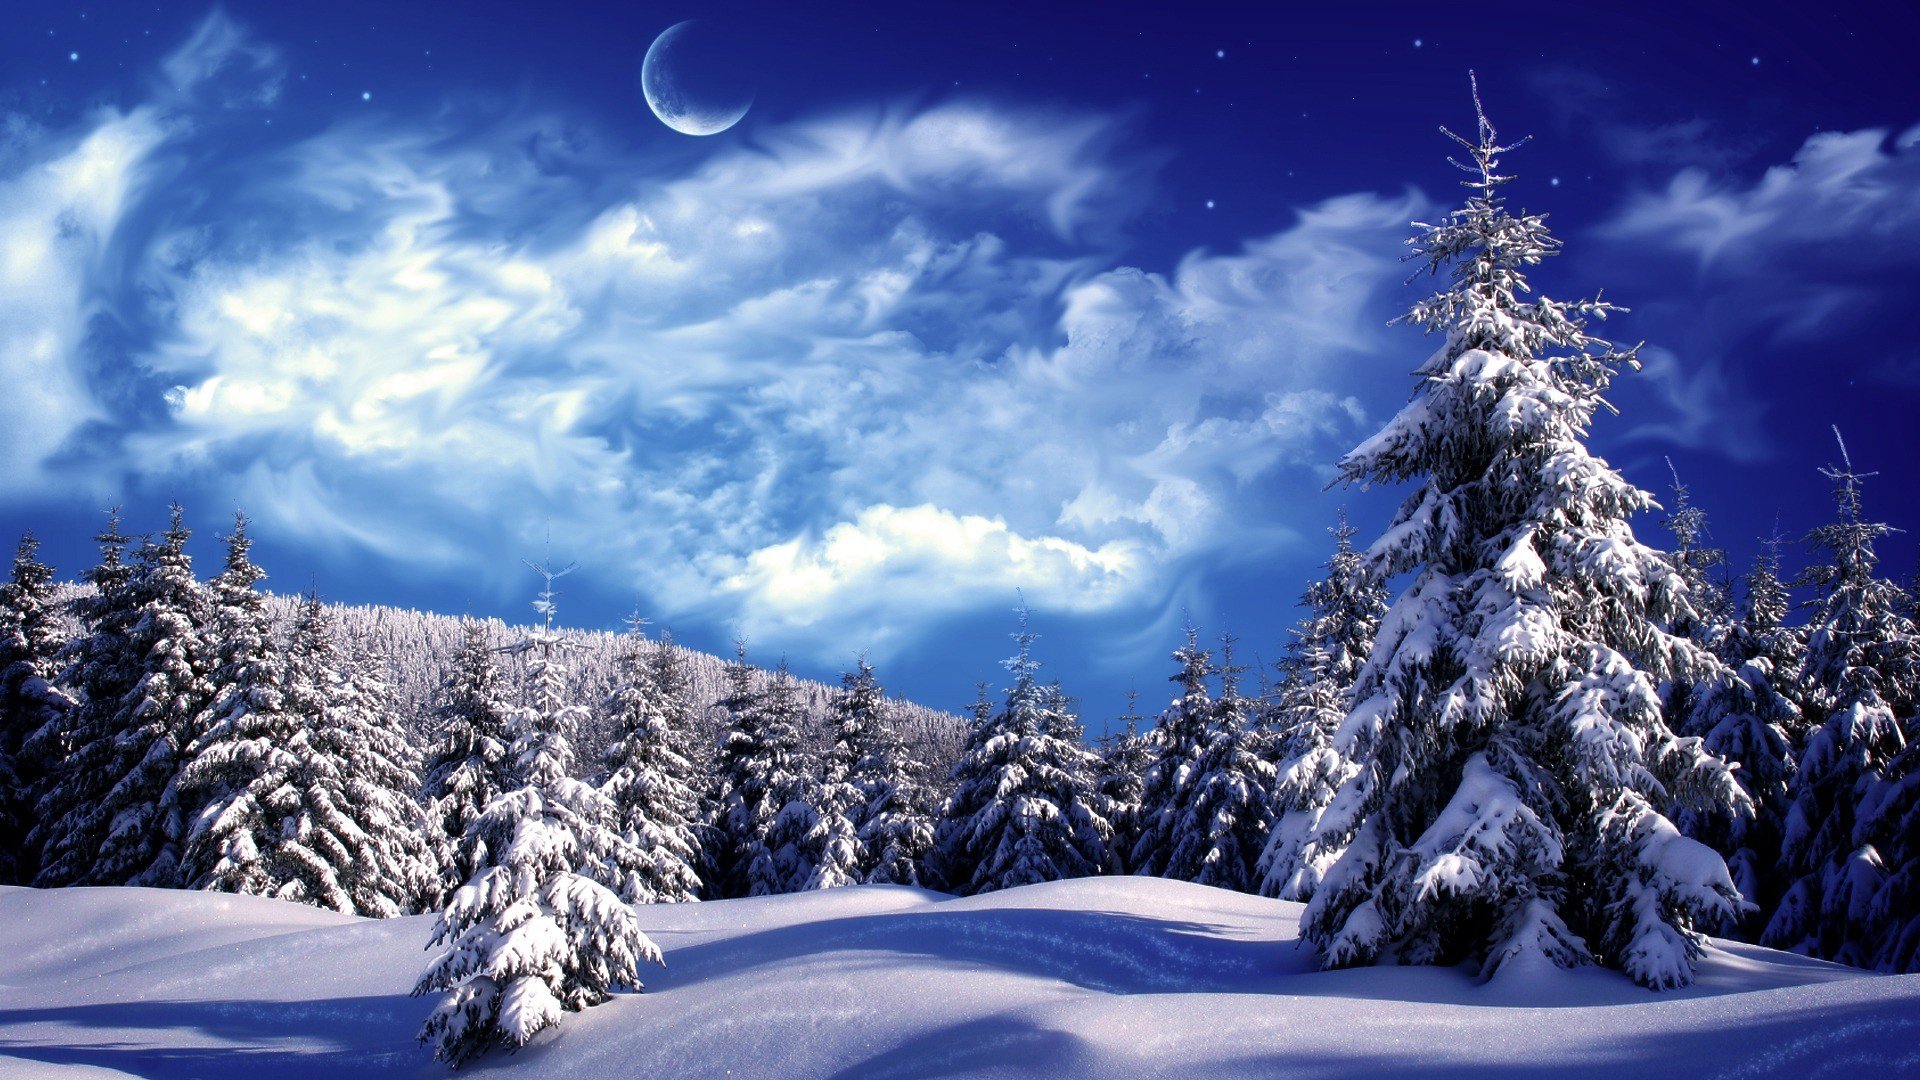 Desktop Winter Landscape Backgrounds Image